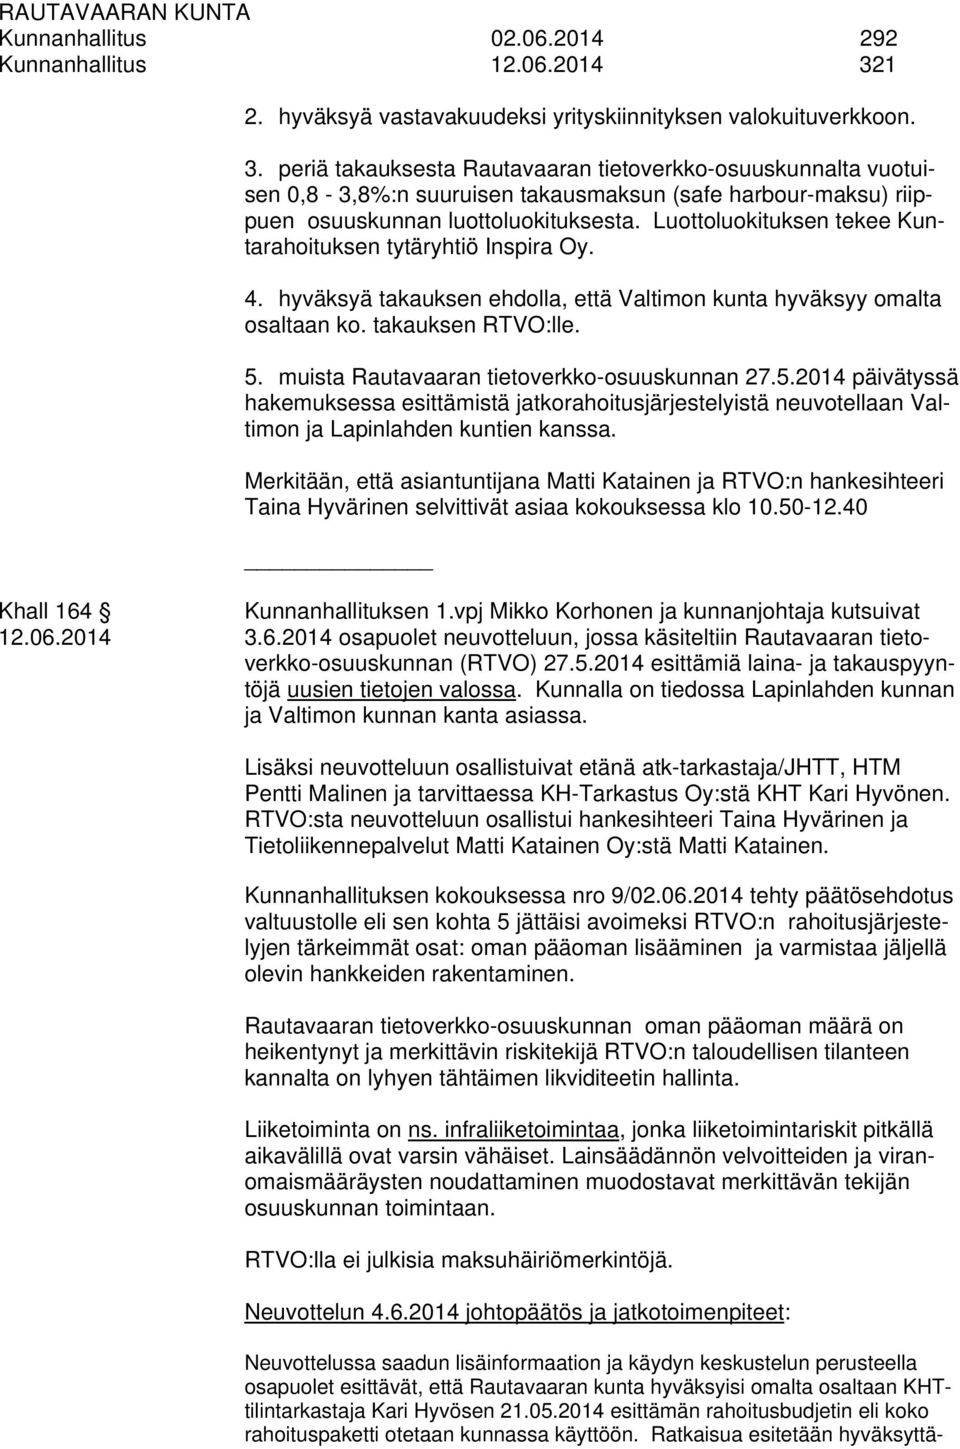 periä takauksesta Rautavaaran tietoverkko-osuuskunnalta vuotuisen 0,8-3,8%:n suuruisen takausmaksun (safe harbour-maksu) riippuen osuuskunnan luottoluokituksesta.